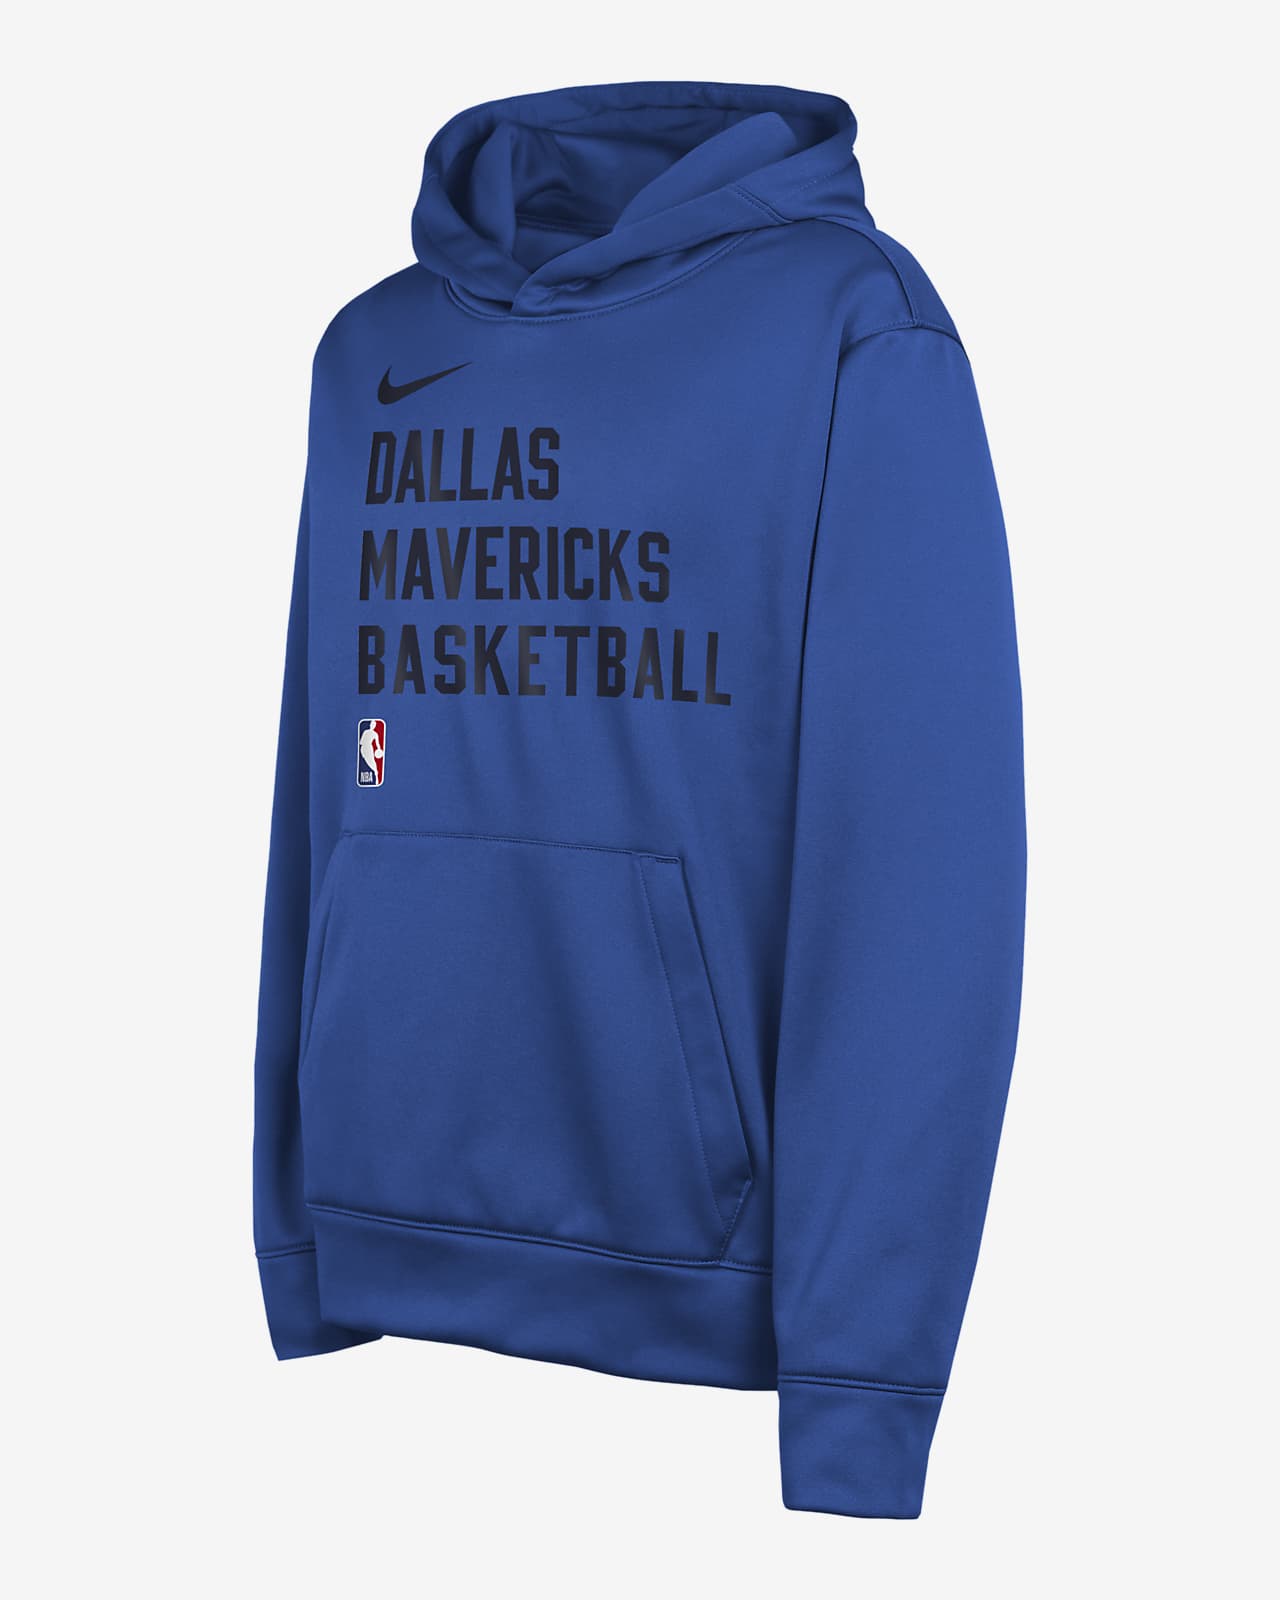 Dallas Mavericks Big Kids' Nike Dri-FIT NBA Pullover Hoodie